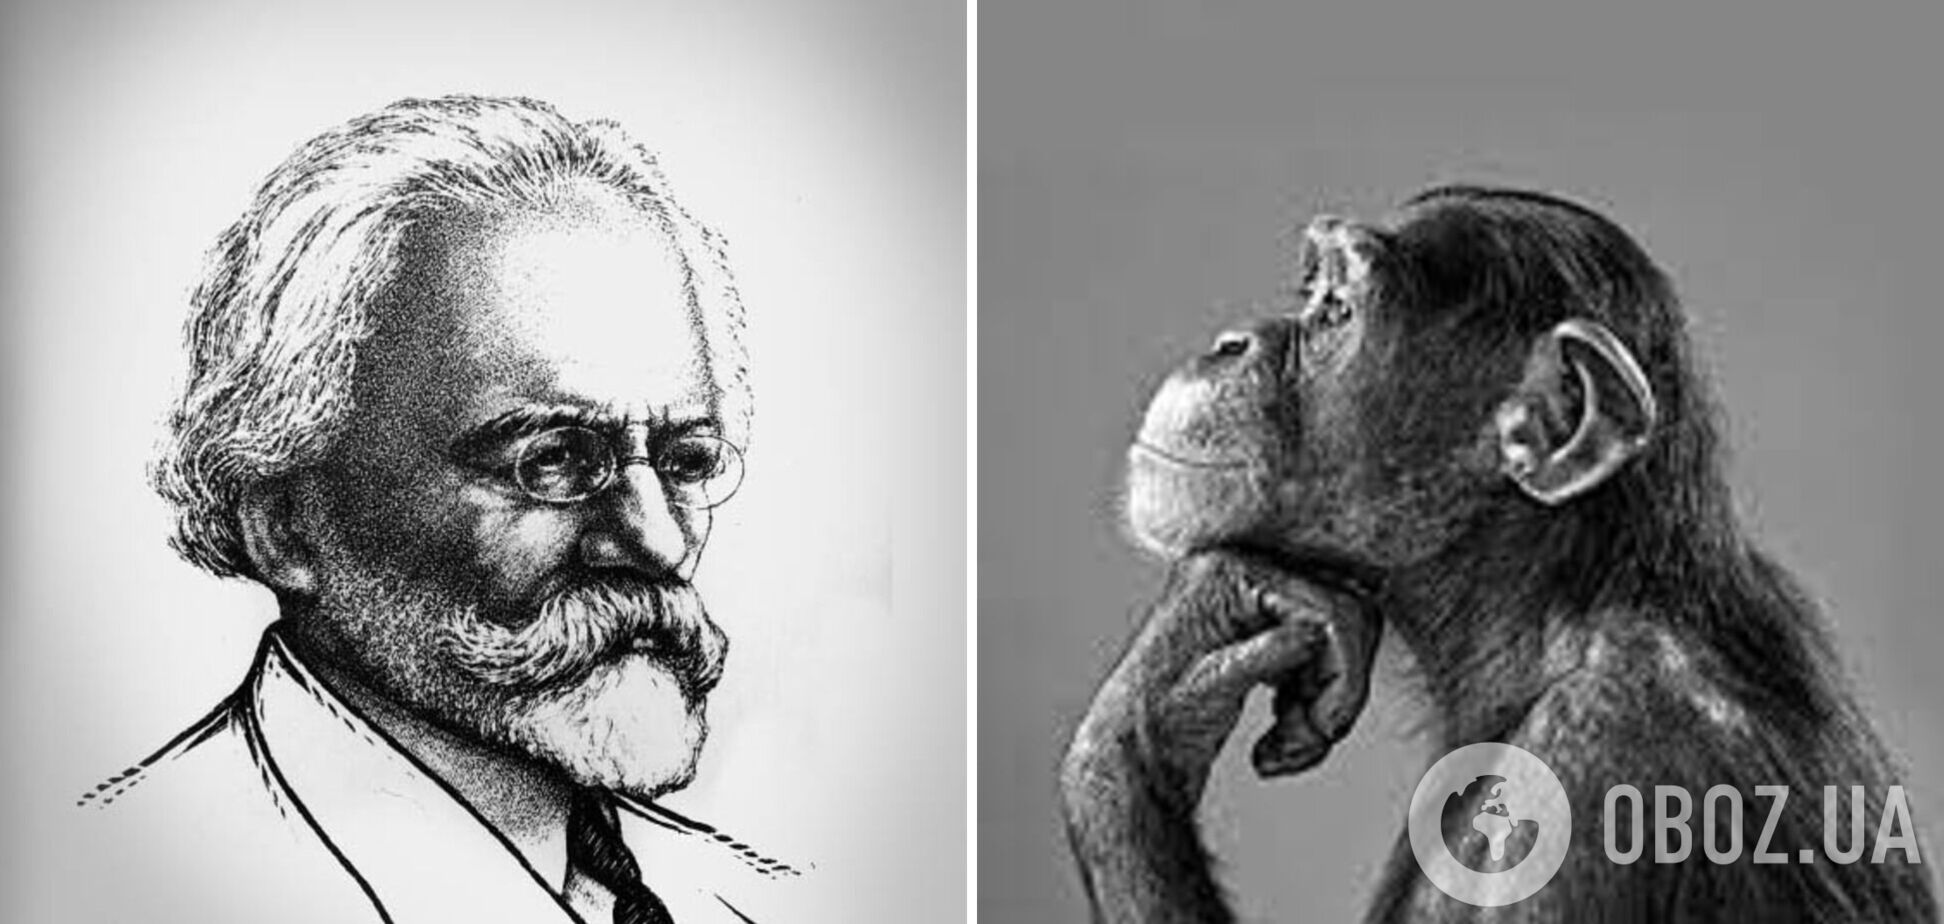 98 лет назад советский ученый попытался скрестить человека и обезьяну: чем закончился жуткий эксперимент